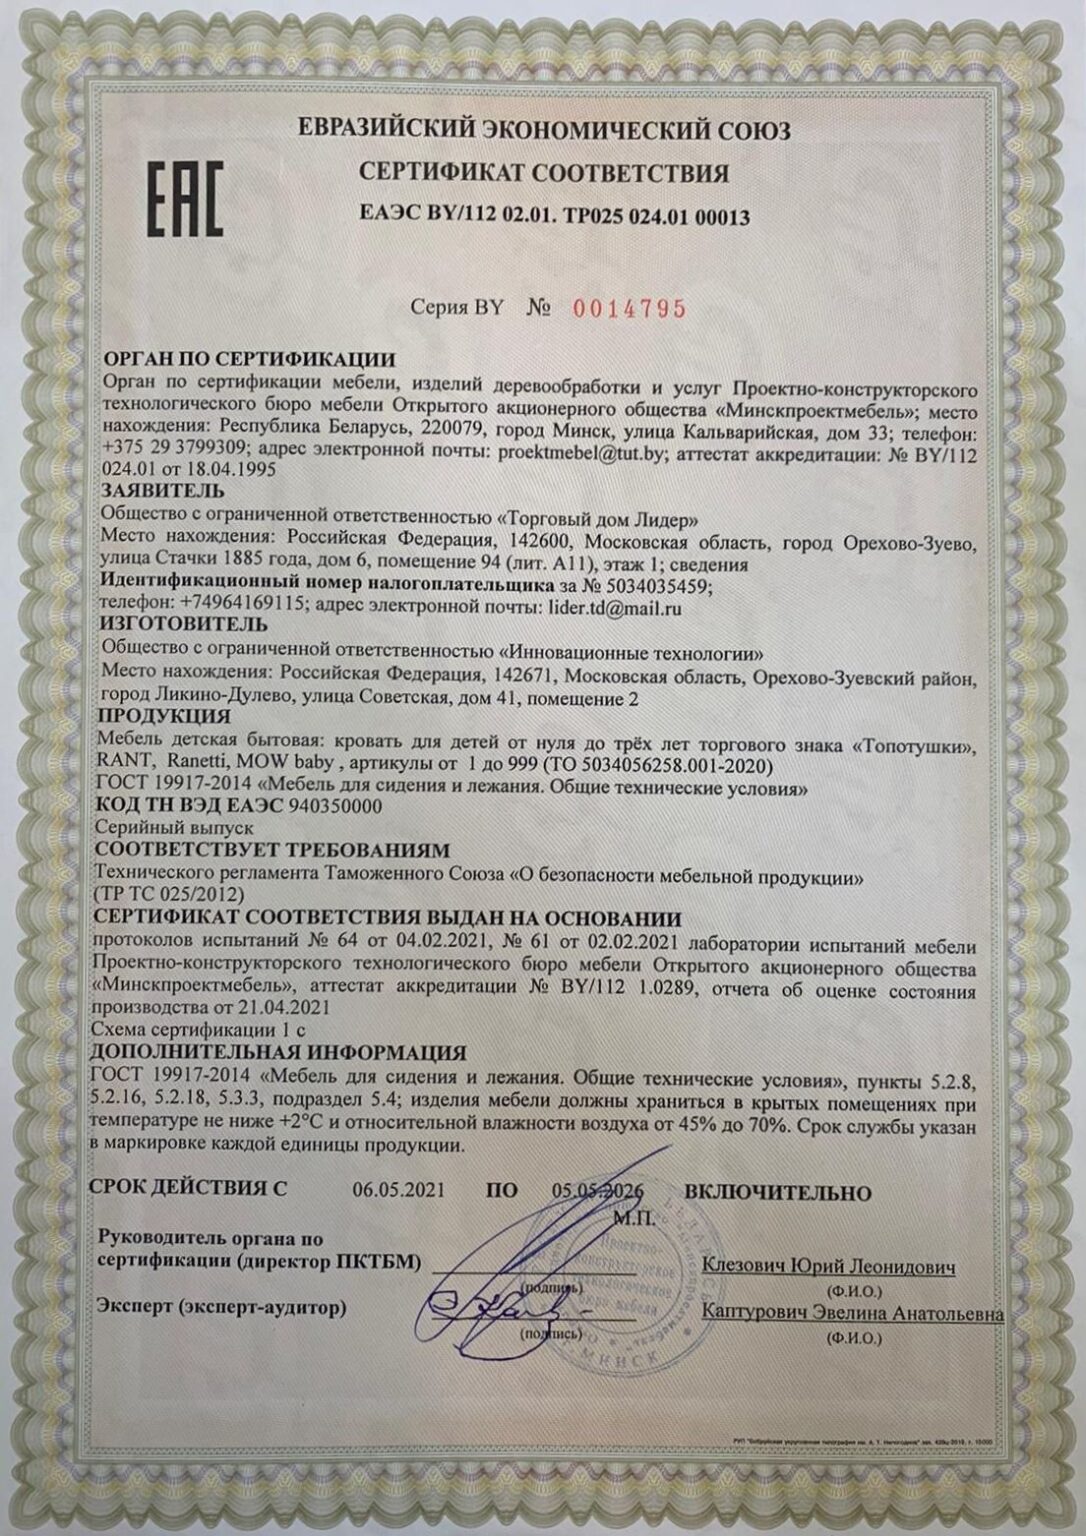 Сертификат на мебель (кровать) до 05.05.2026 г.